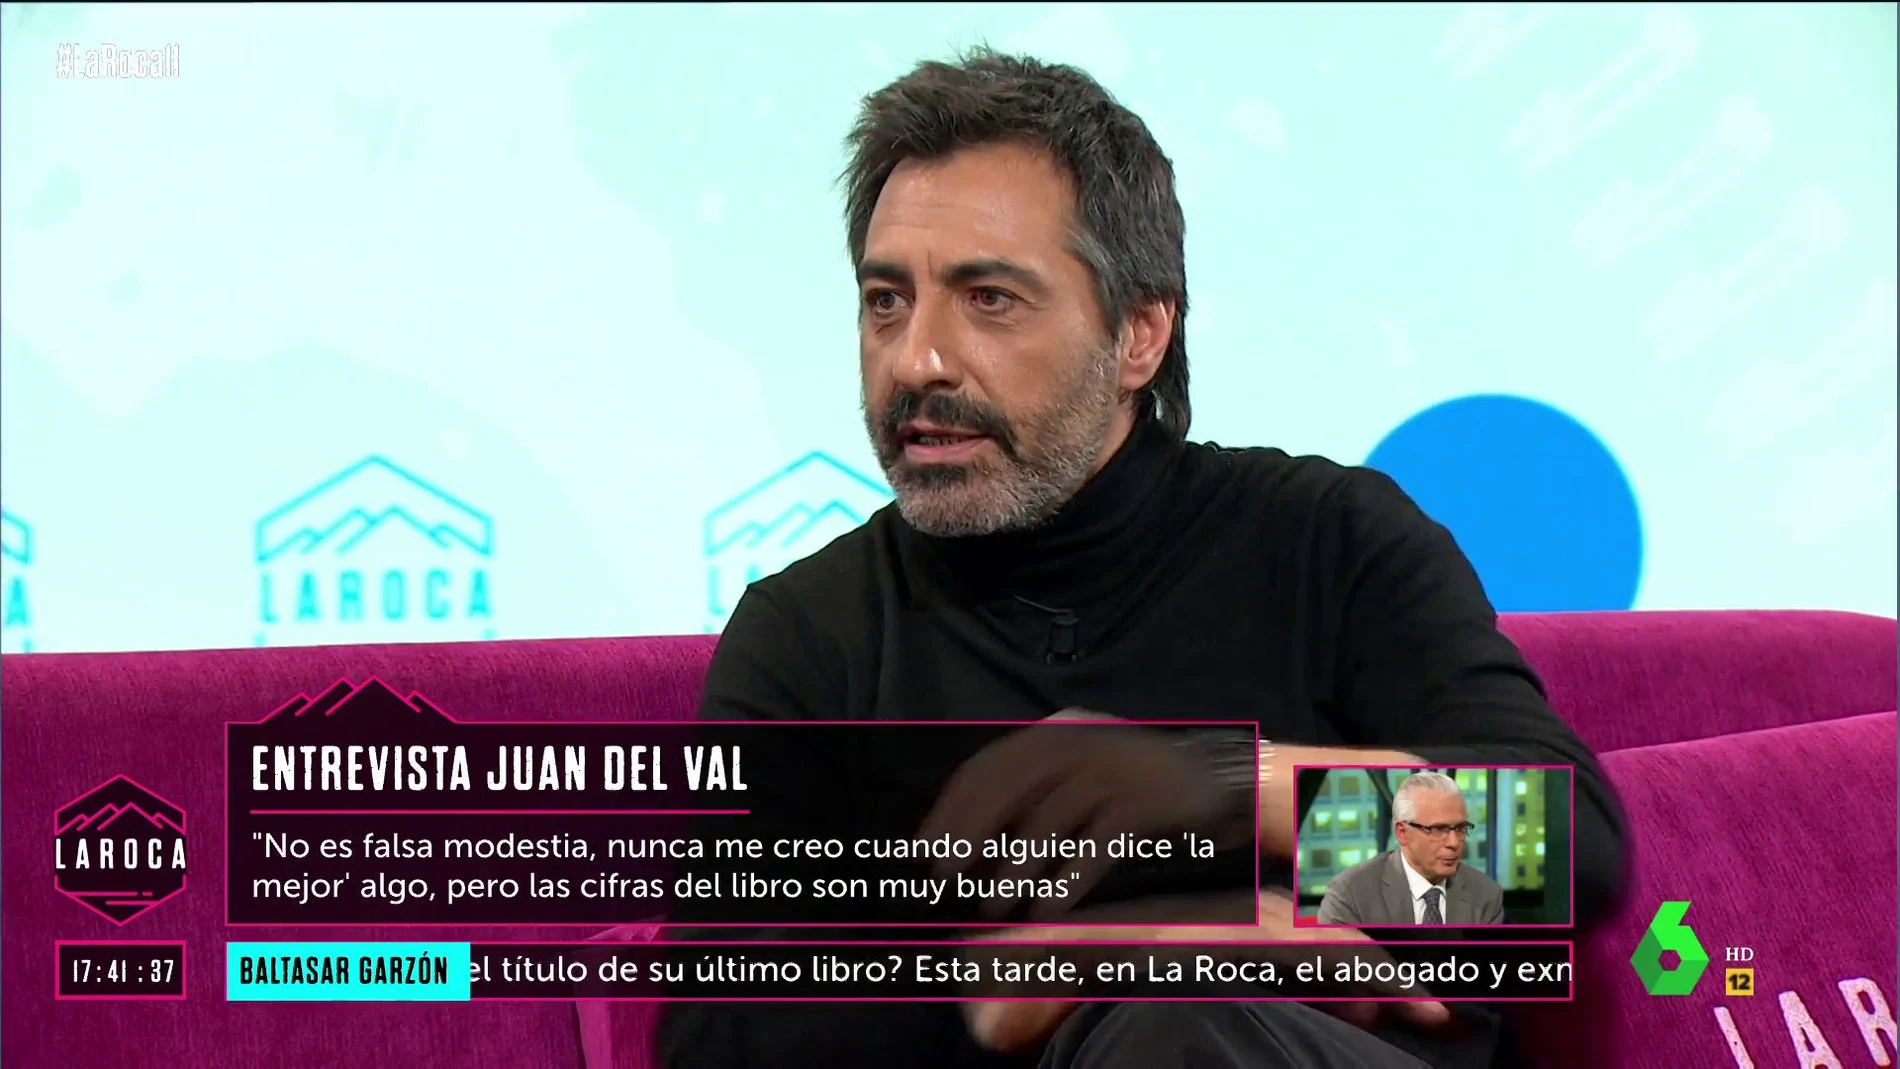 Juan del Val en la entrevista en la roca